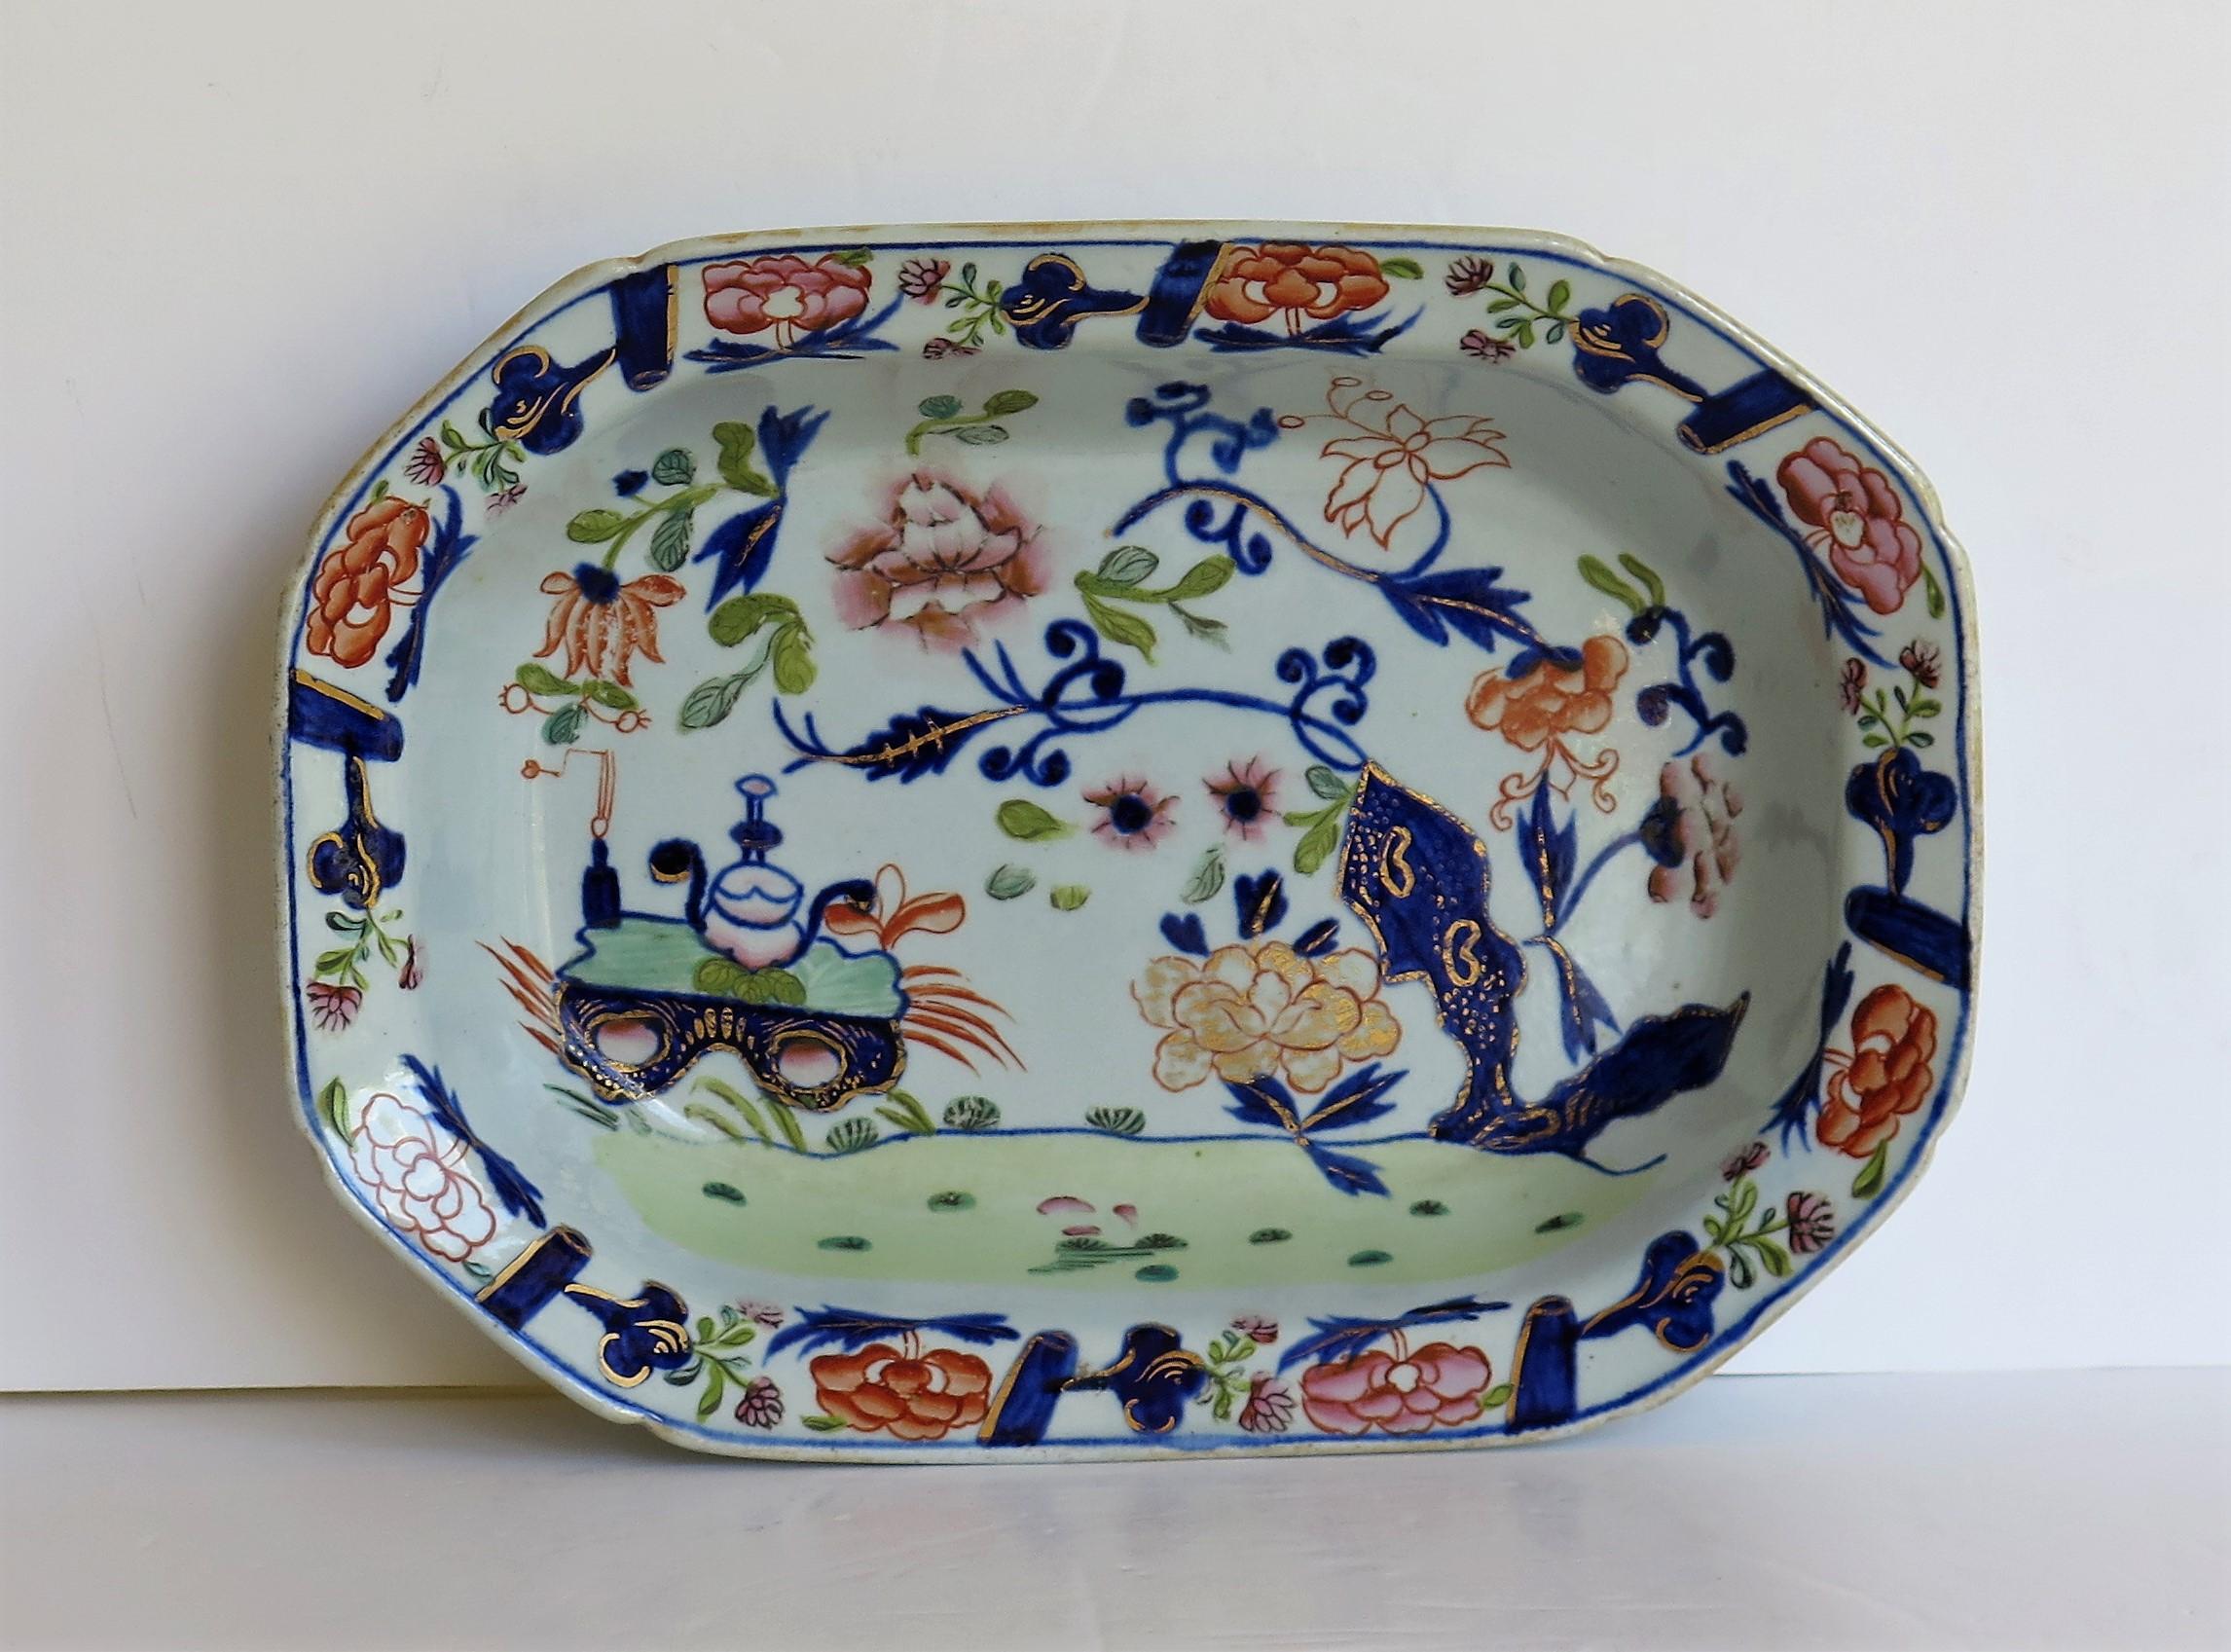 Ce plat profond ou plat à tarte / plat de service géorgien du début du XIXe siècle a été fabriqué par Mason's Ironstone dans le motif chinoiserie doré du petit vase, des fleurs et des rochers, datant d'environ 1815.

Ce plat à tarte peut être